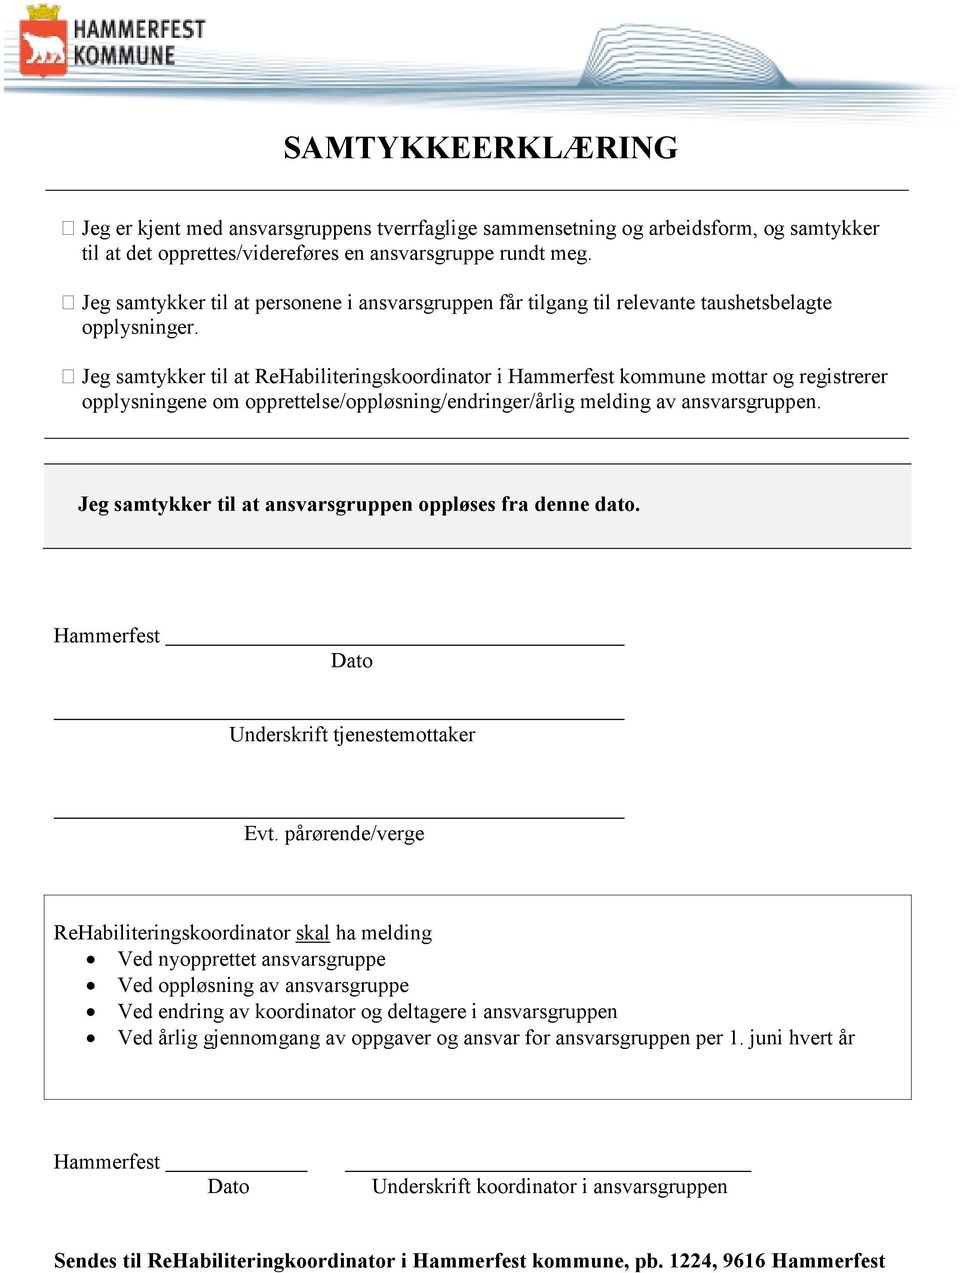 Jeg samtykker til at ReHabiliteringskoordinator i Hammerfest kommune mottar og registrerer opplysningene om opprettelse/oppløsning/endringer/årlig melding av ansvarsgruppen.